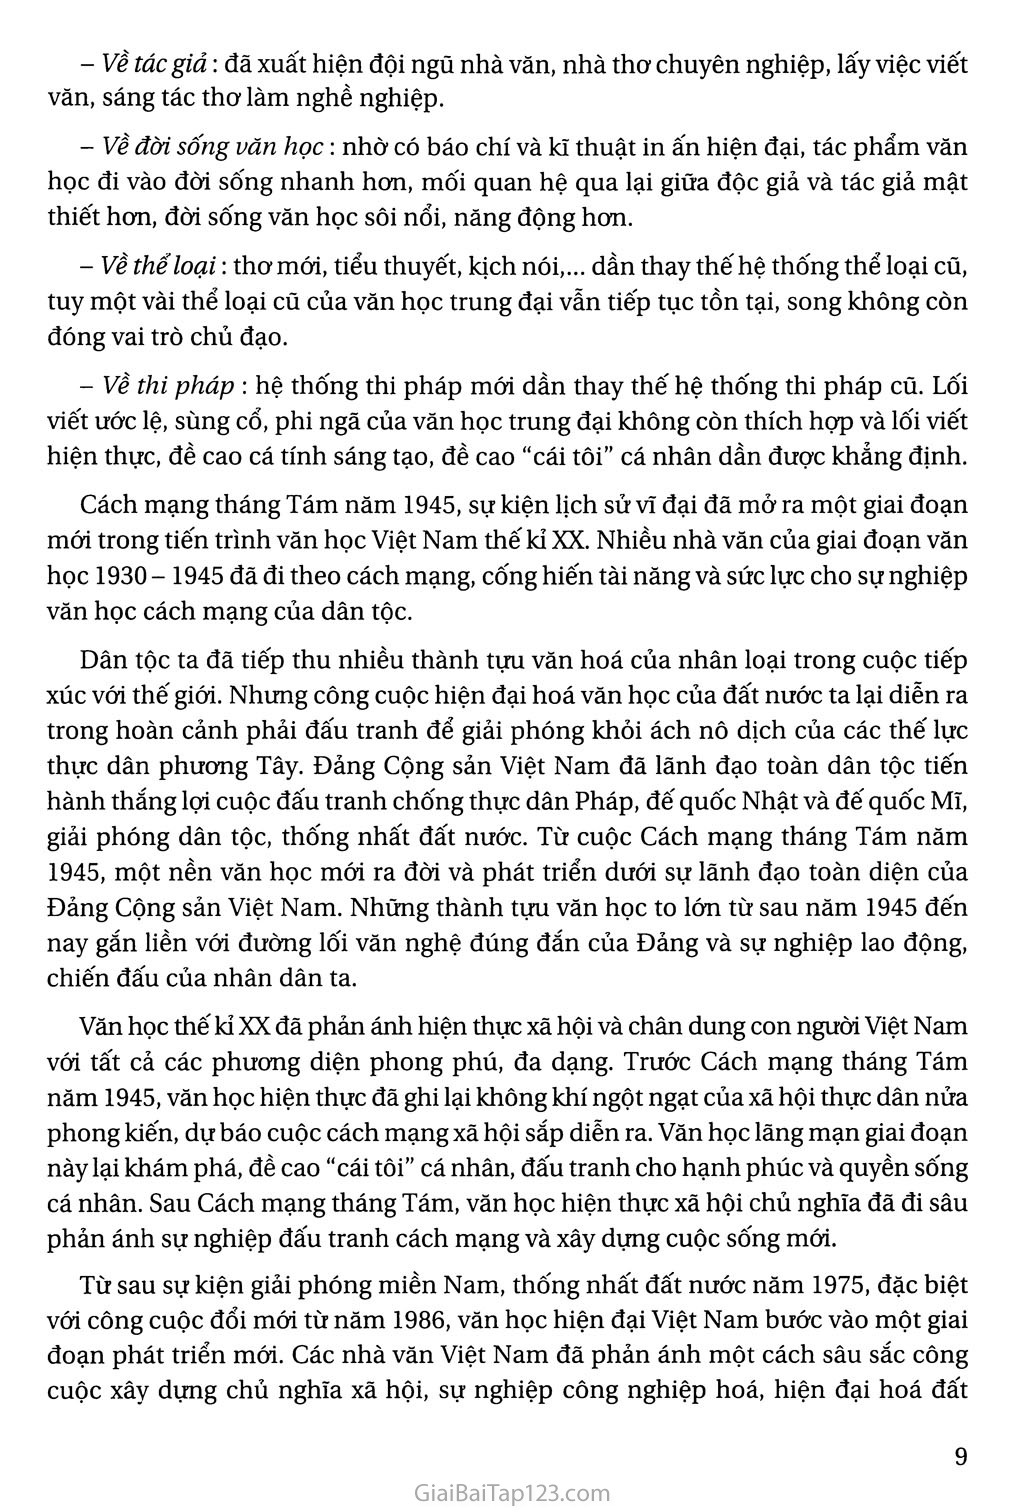 Tổng quan văn học Việt Nam trang 5